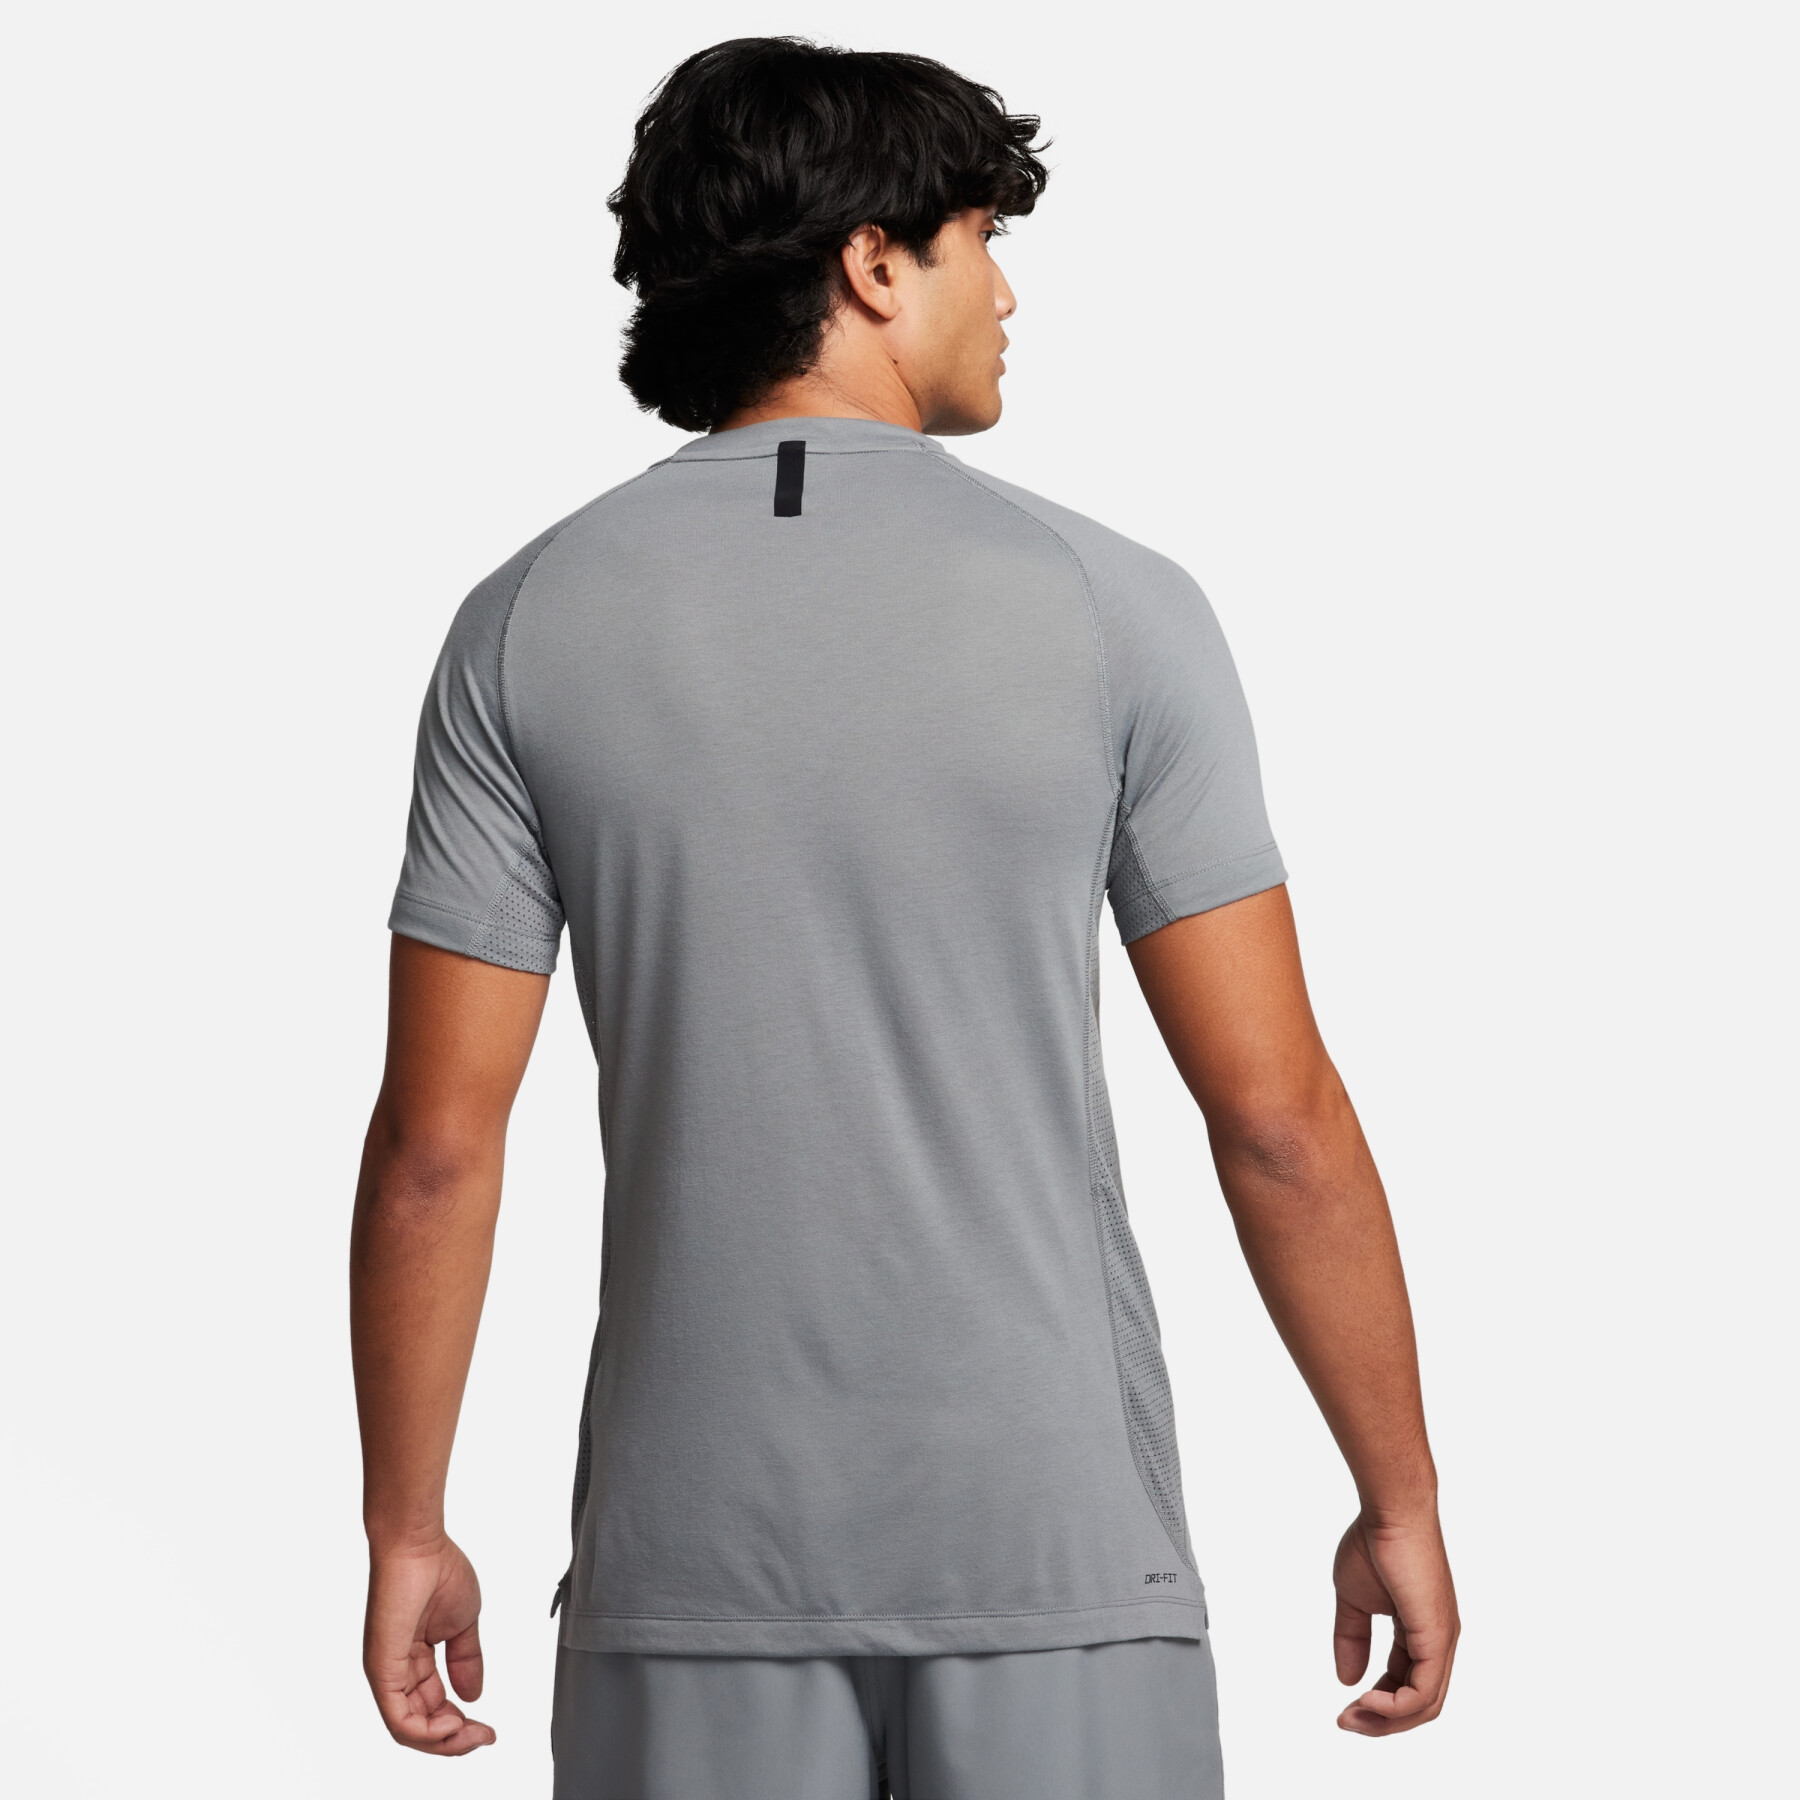 Camiseta Nike Flex Rep